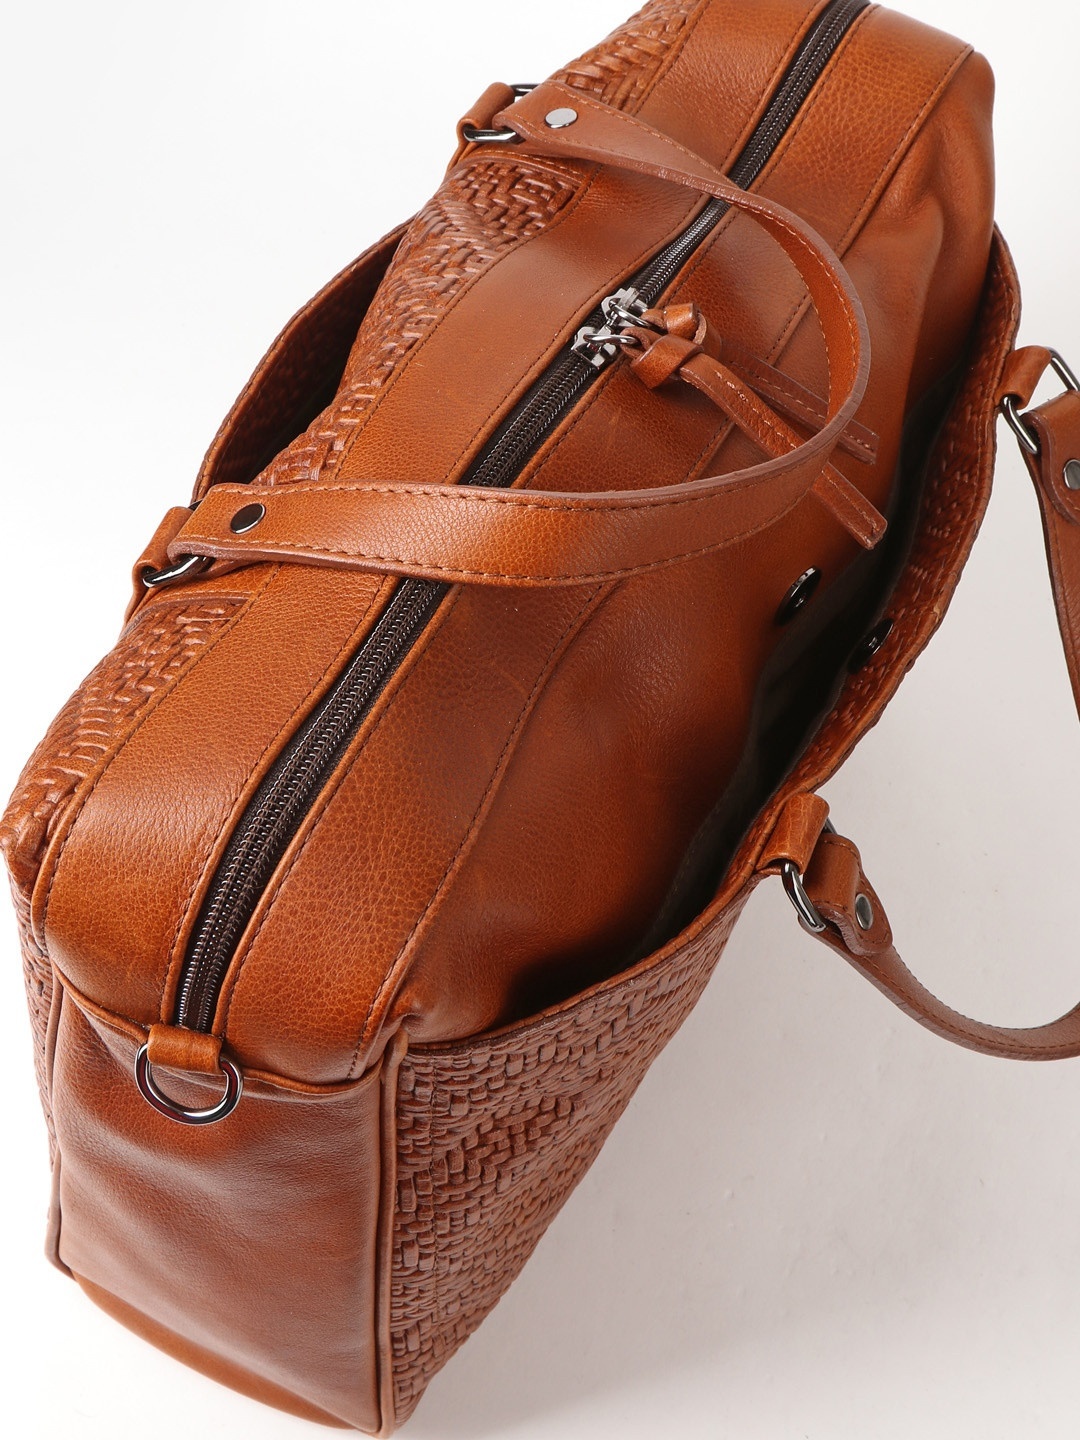 Фото Деловая сумка из натуральной плетеной кожи коньячного оттенка Деловые сумки (А4)